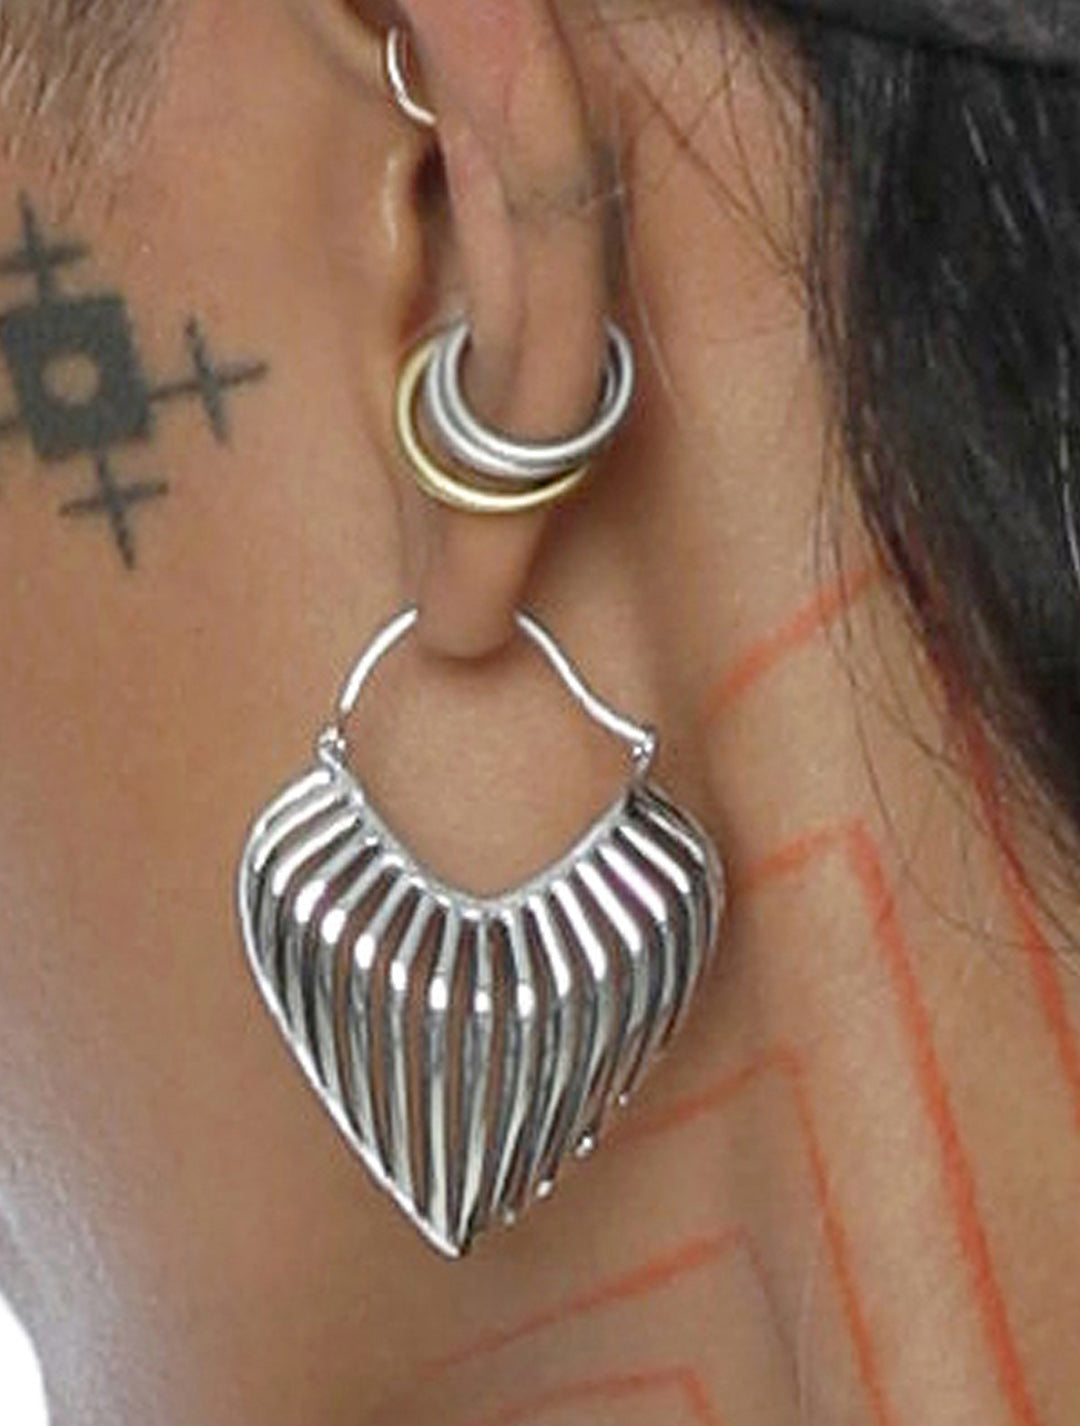 Heart 3D Hoops Tribal Earrings by Tribali - Psylo Fashion